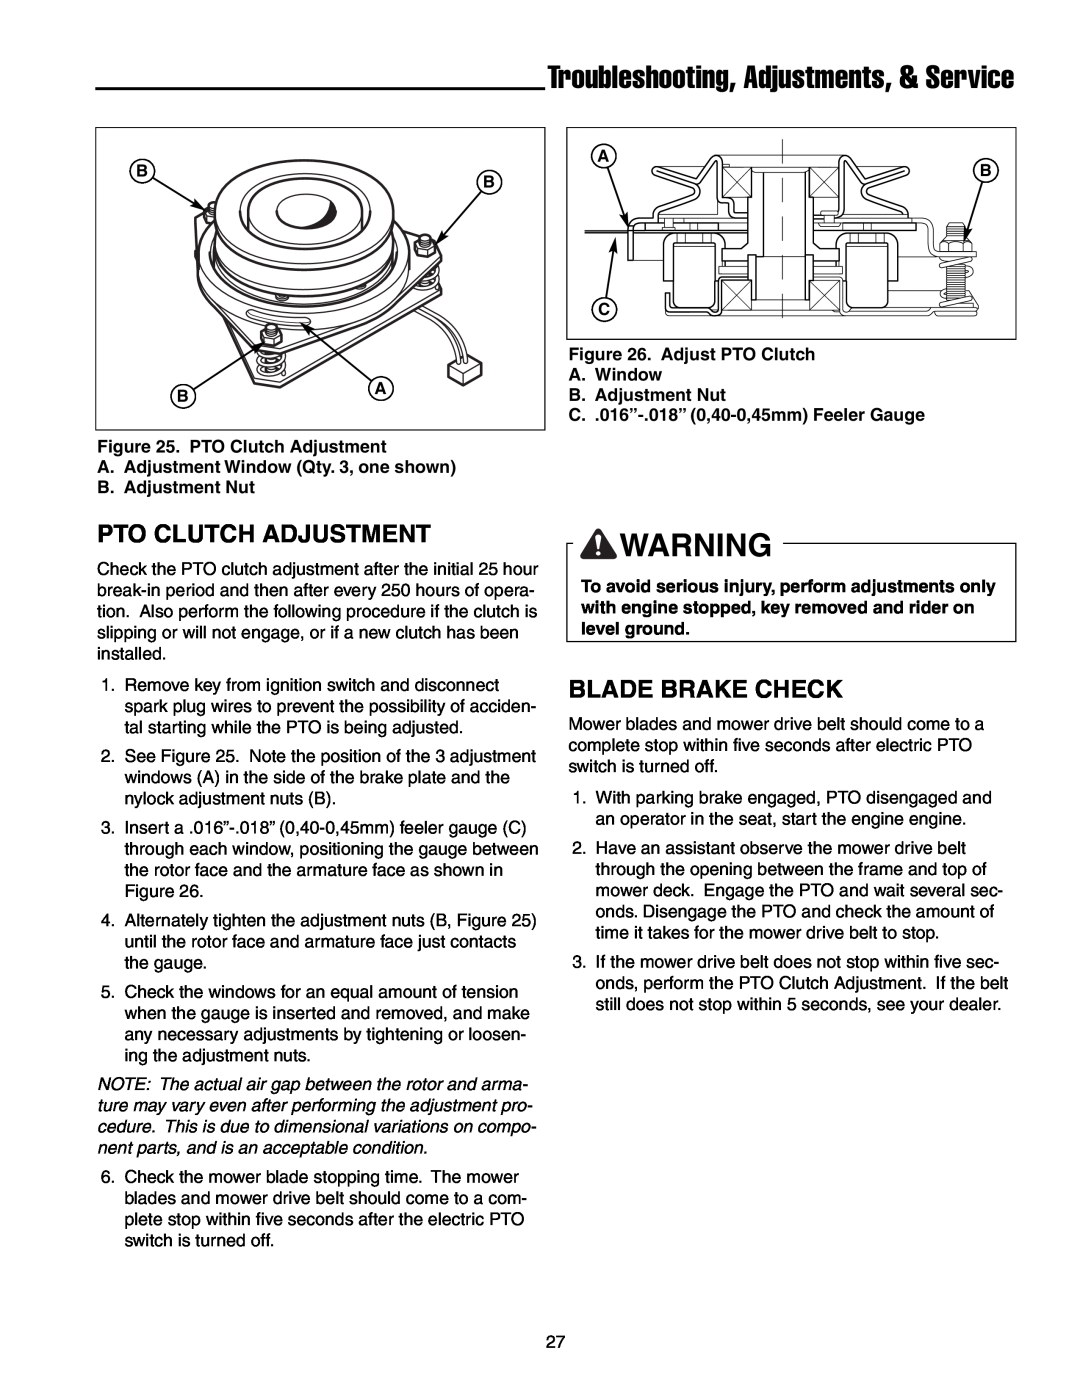 Snapper RZT22500BVE2, RZT20440BVE2 manual Pto Clutch Adjustment, Blade Brake Check, PTO Clutch Adjustment 